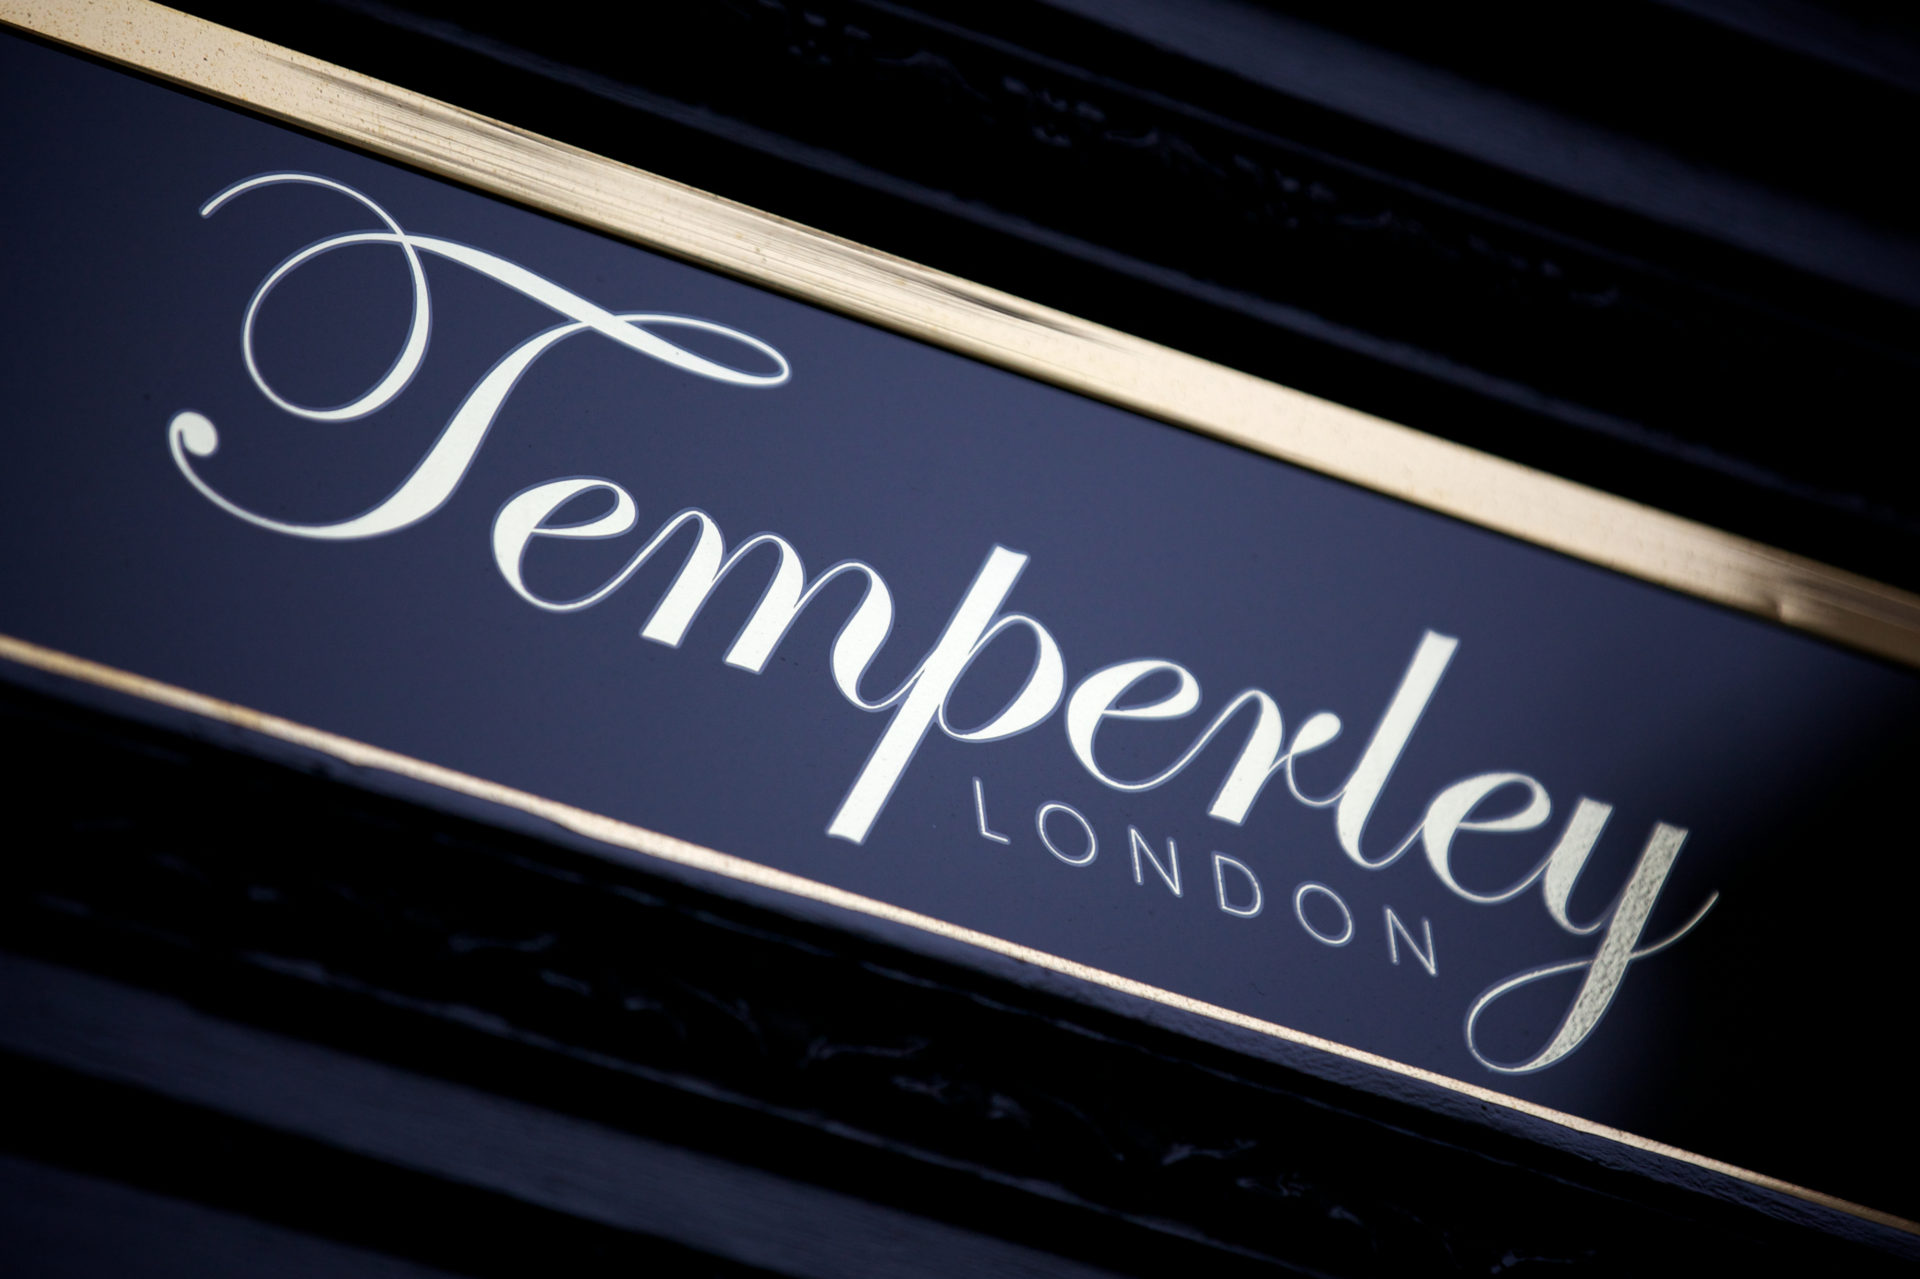 alice temperley london design